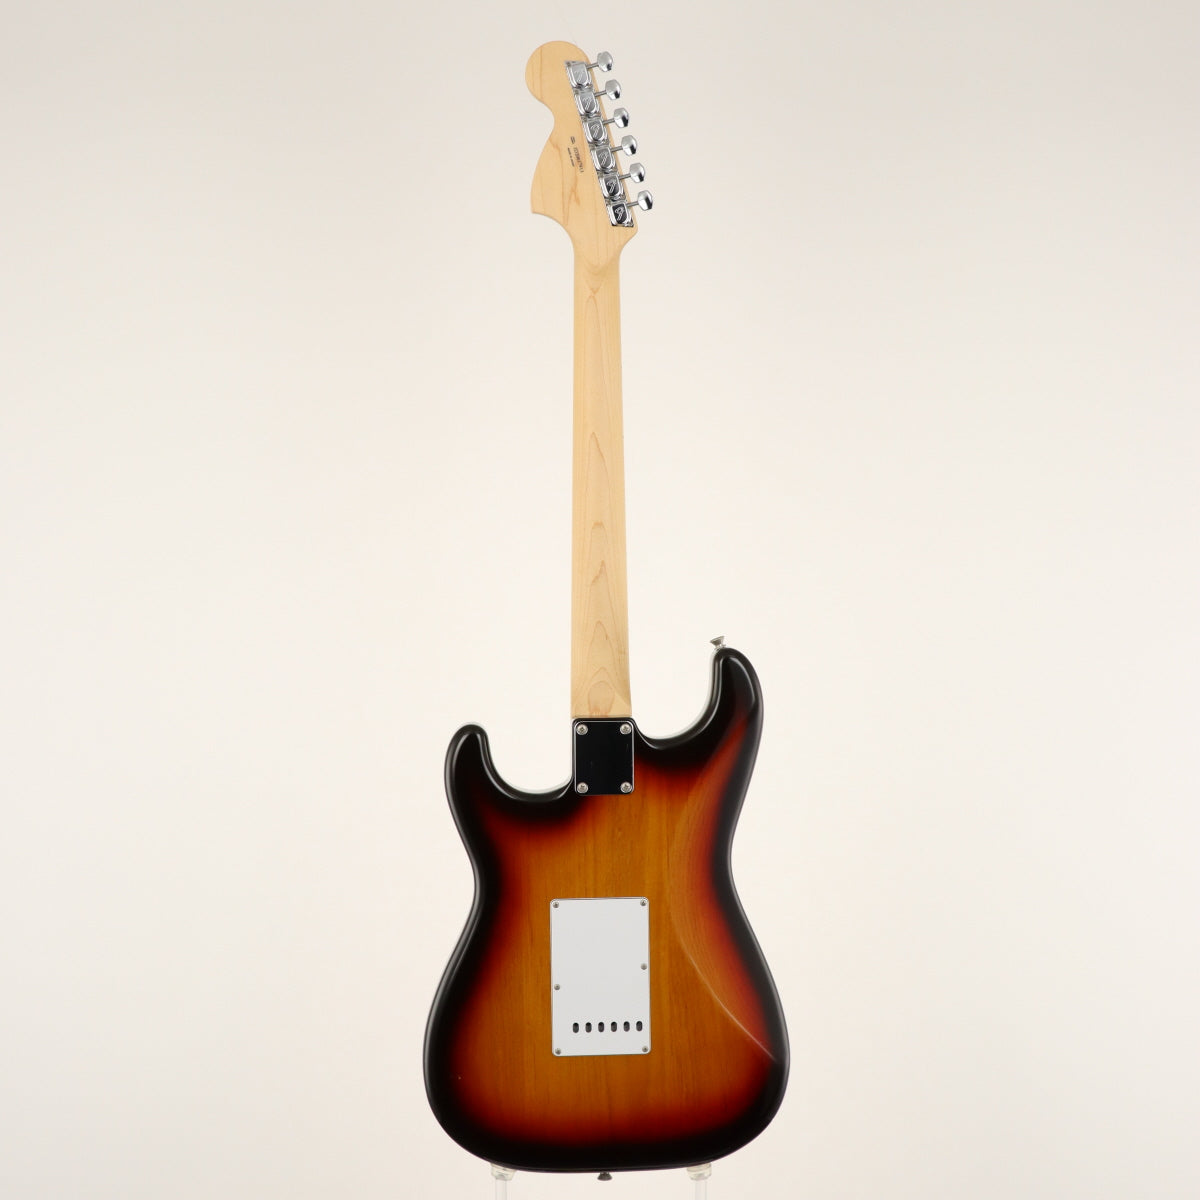 [SN MIJ JD20017913] USED Fender Fender / Made in Japan Hybrid 68 Stratocaster 3-Tone Sunburst [20]